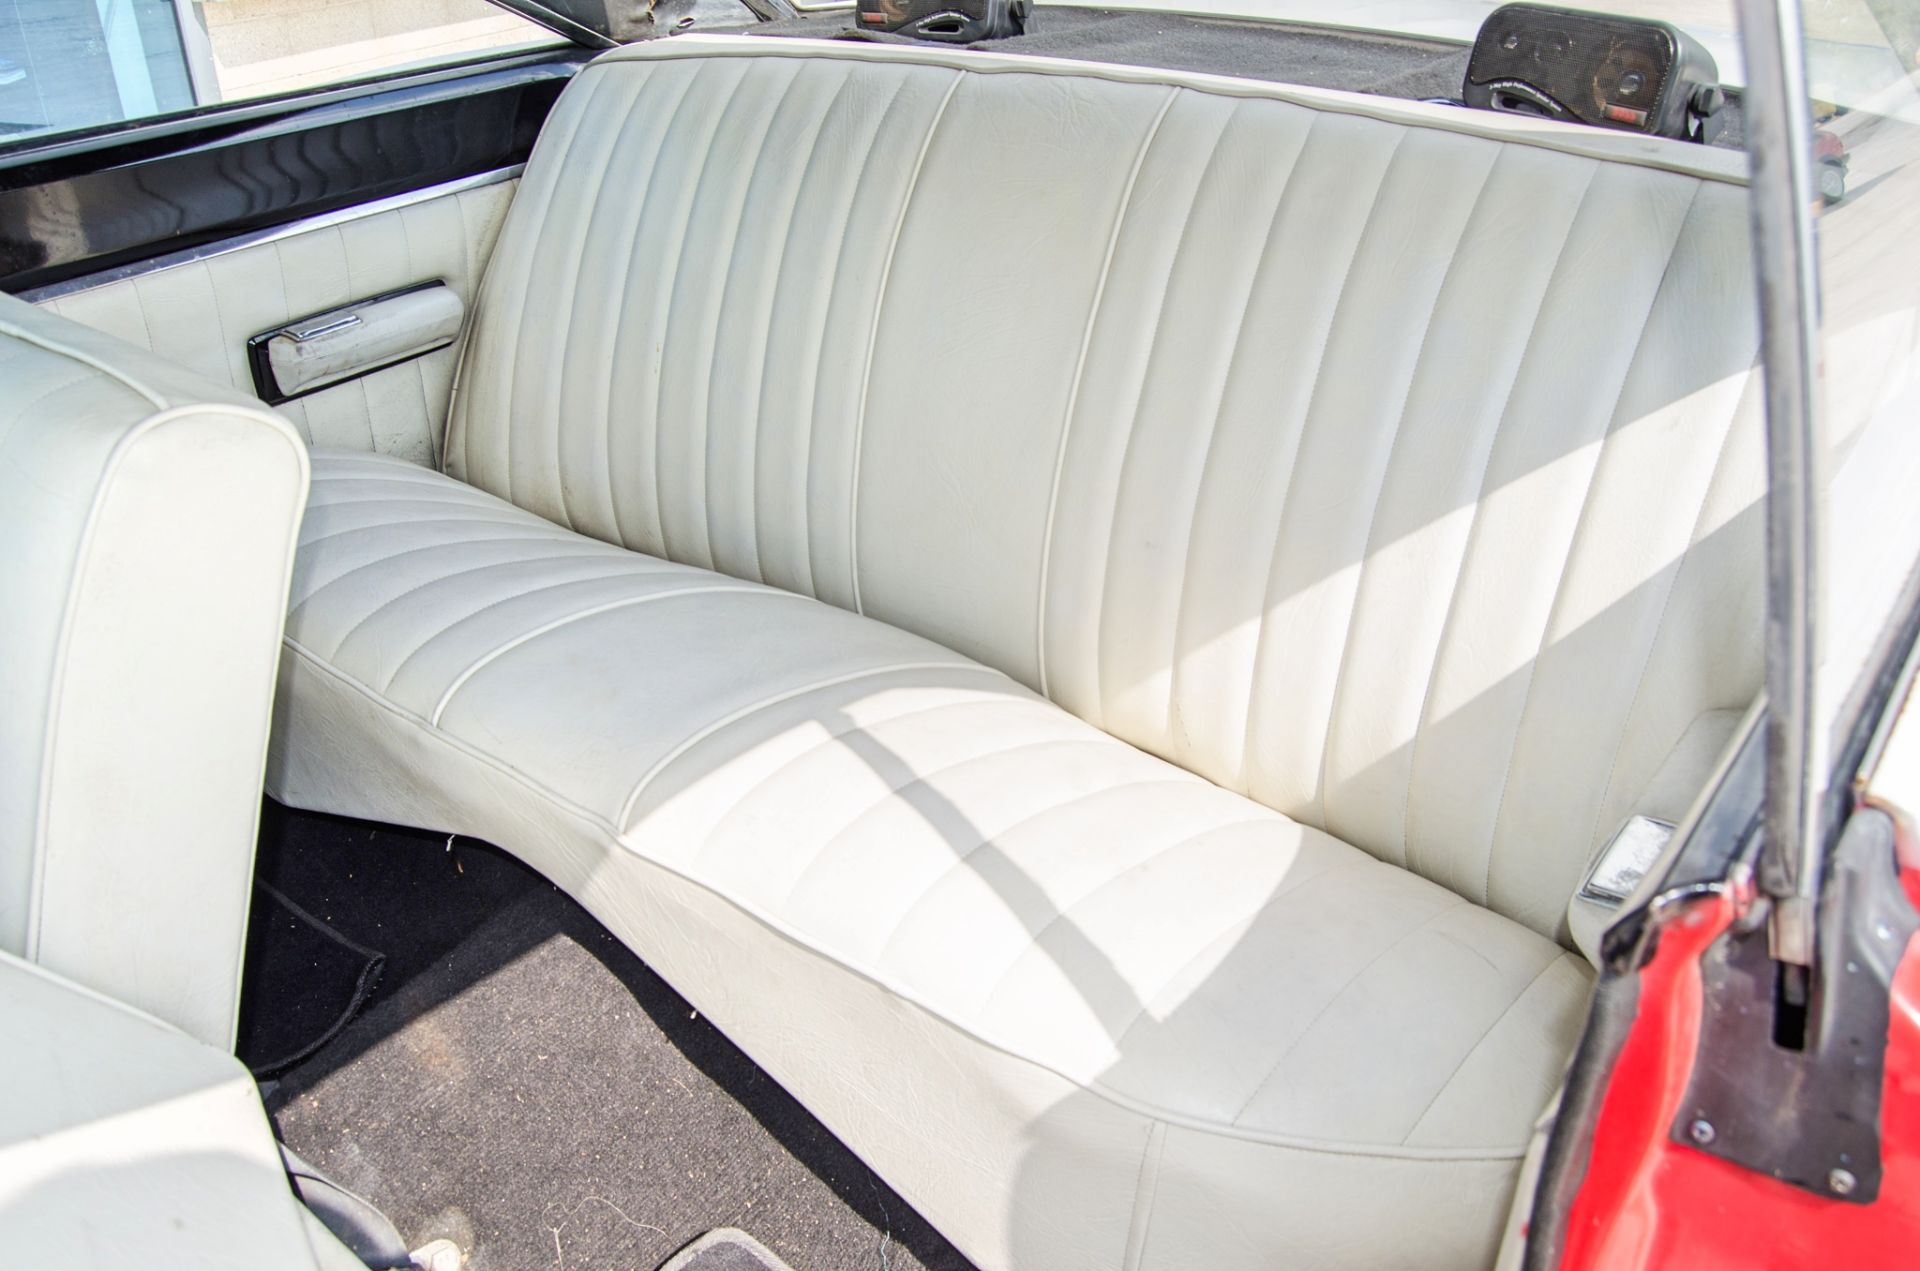 1967 Dodge Coronet 440 7.2 litre 2 door coupe - Image 41 of 54